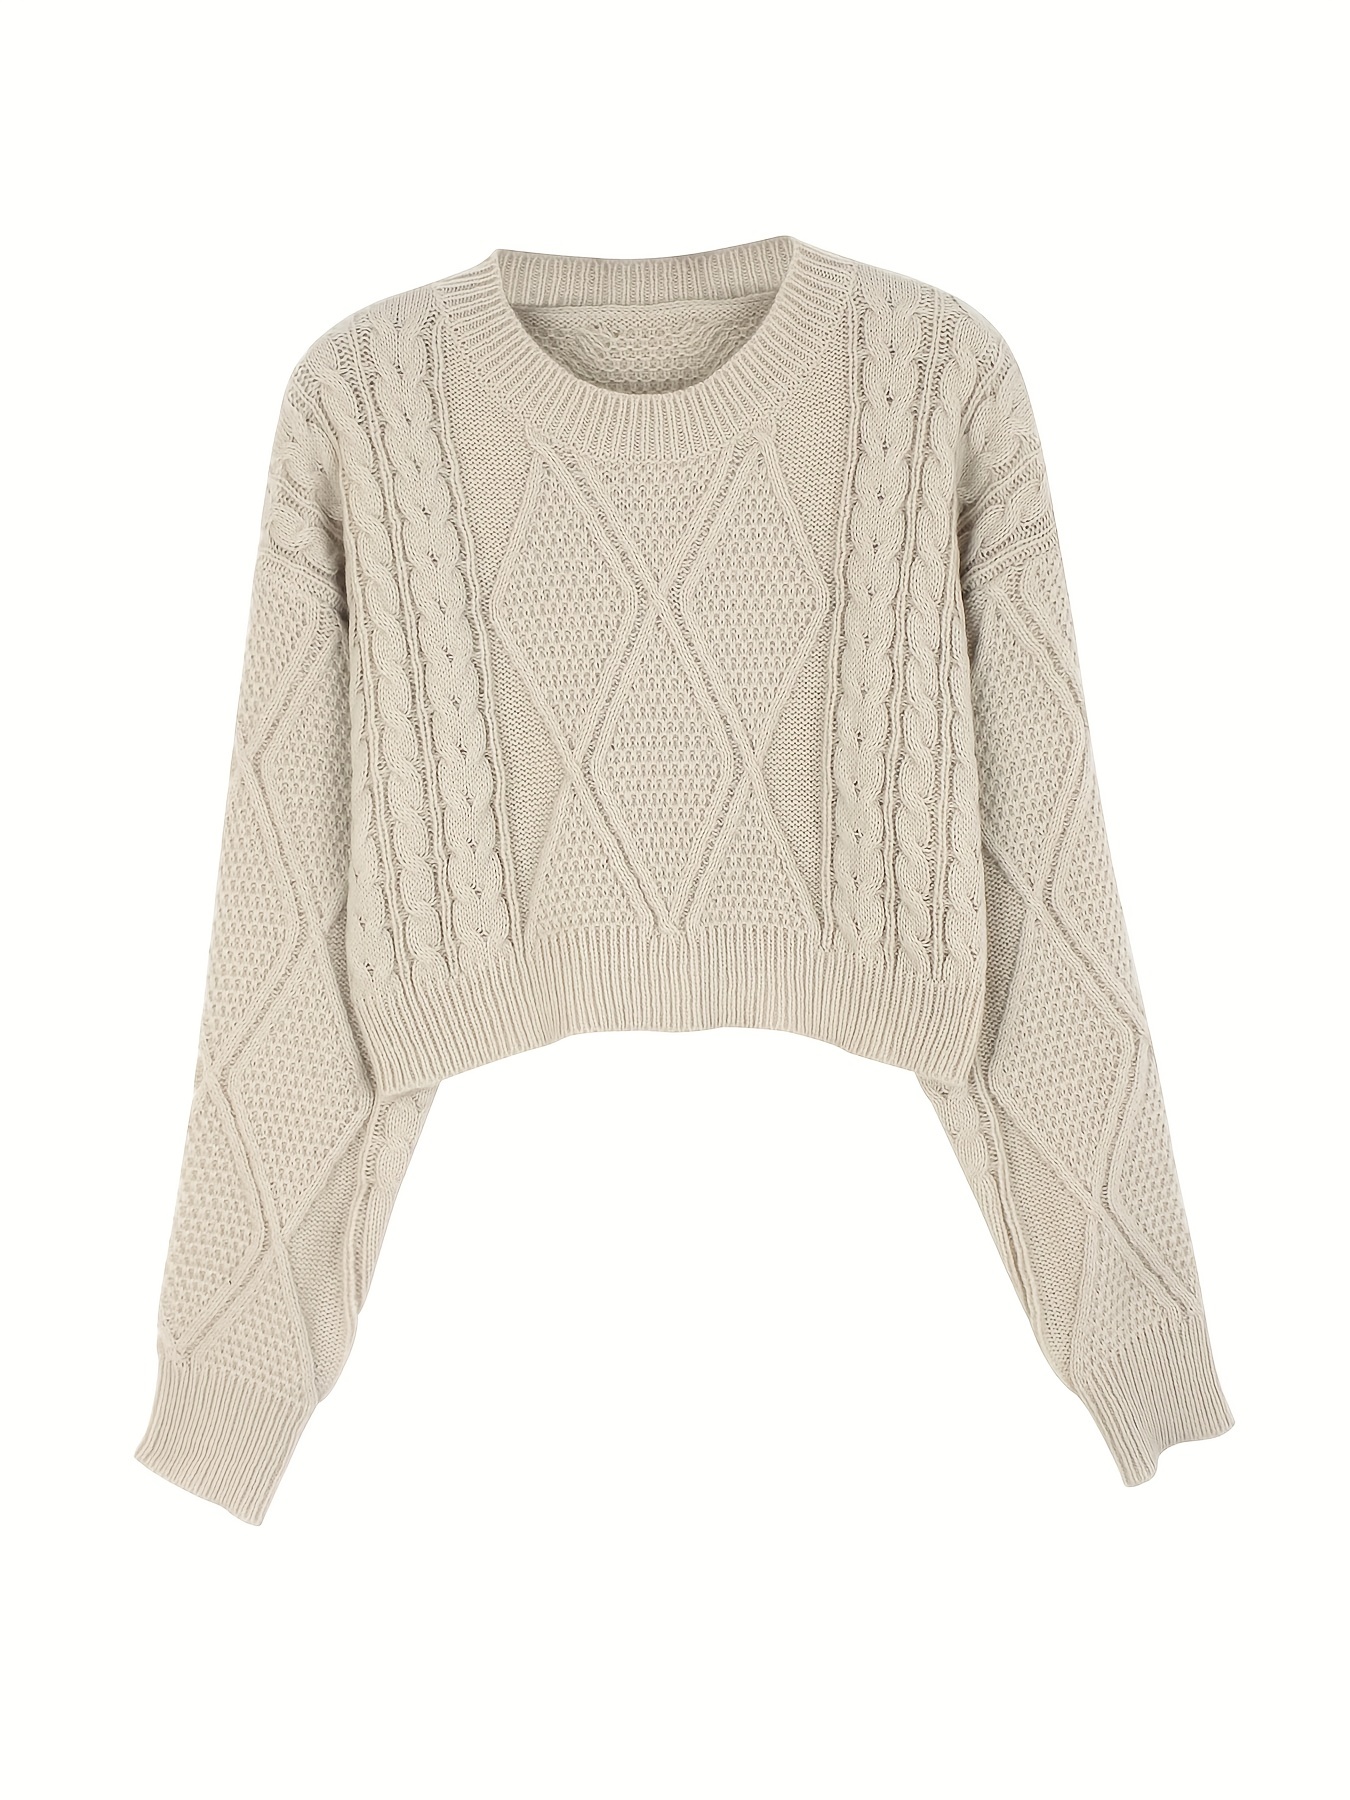 Lana Twist Front Crop Sweater- Mocha